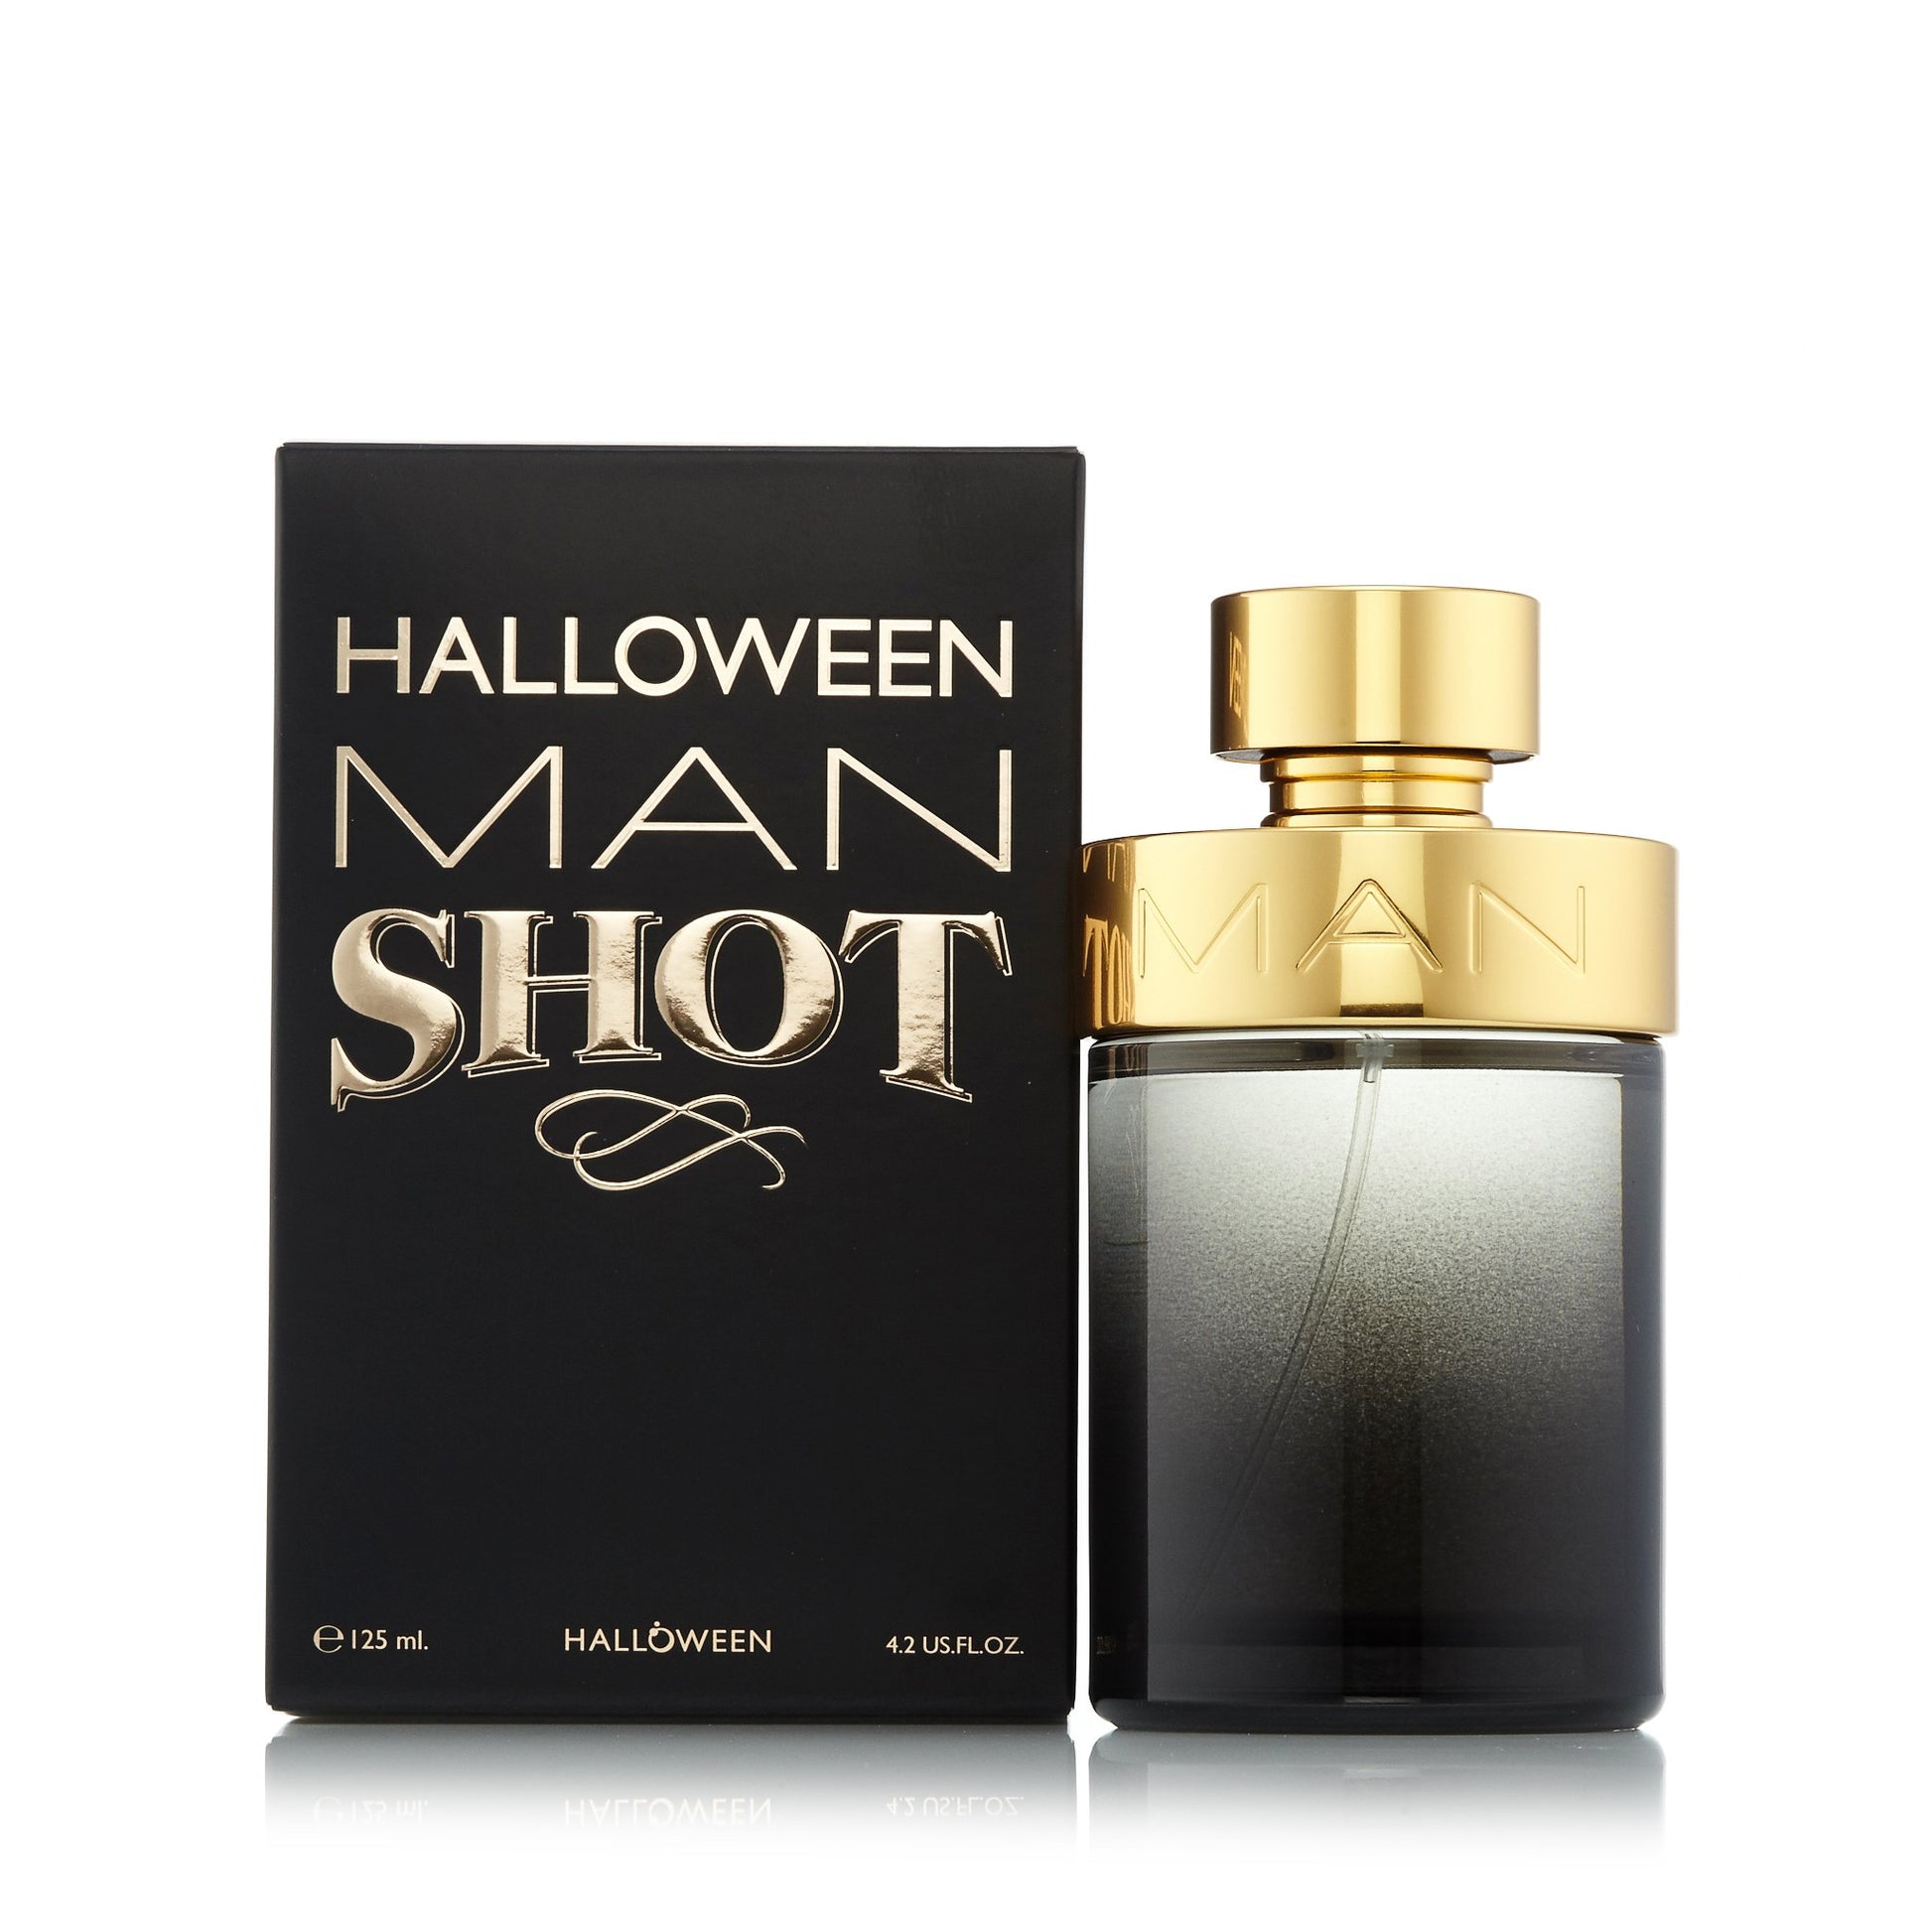 Halloween Man Shot Eau de Toilette Spray for Men by Jesus Del Pozo, Product image 2